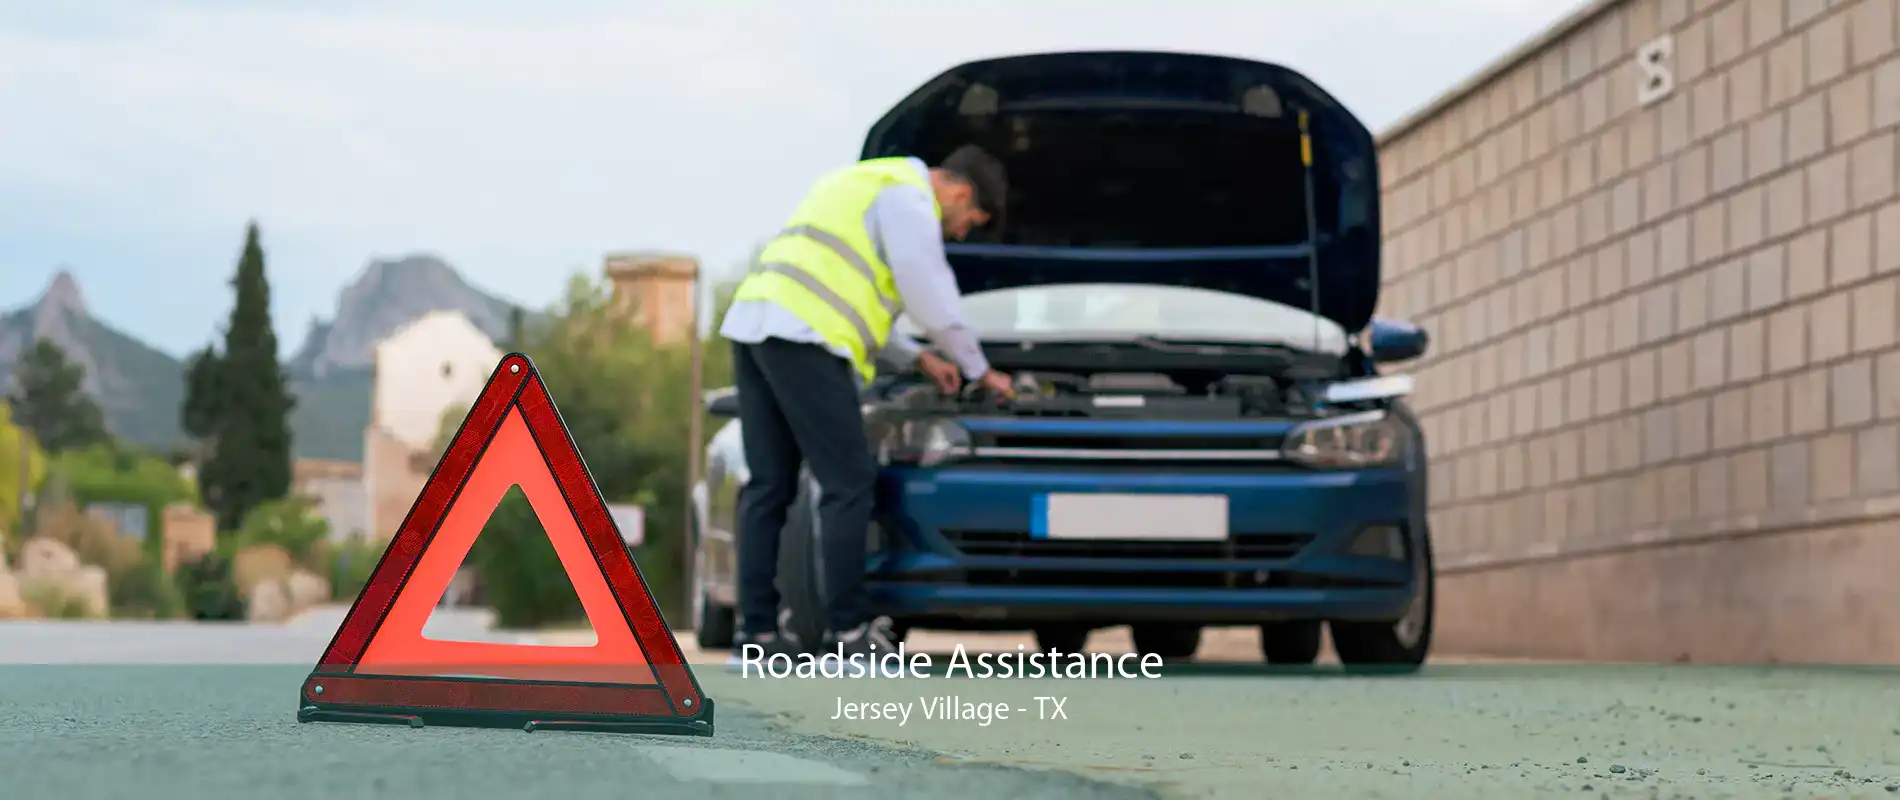 Roadside Assistance Jersey Village - TX